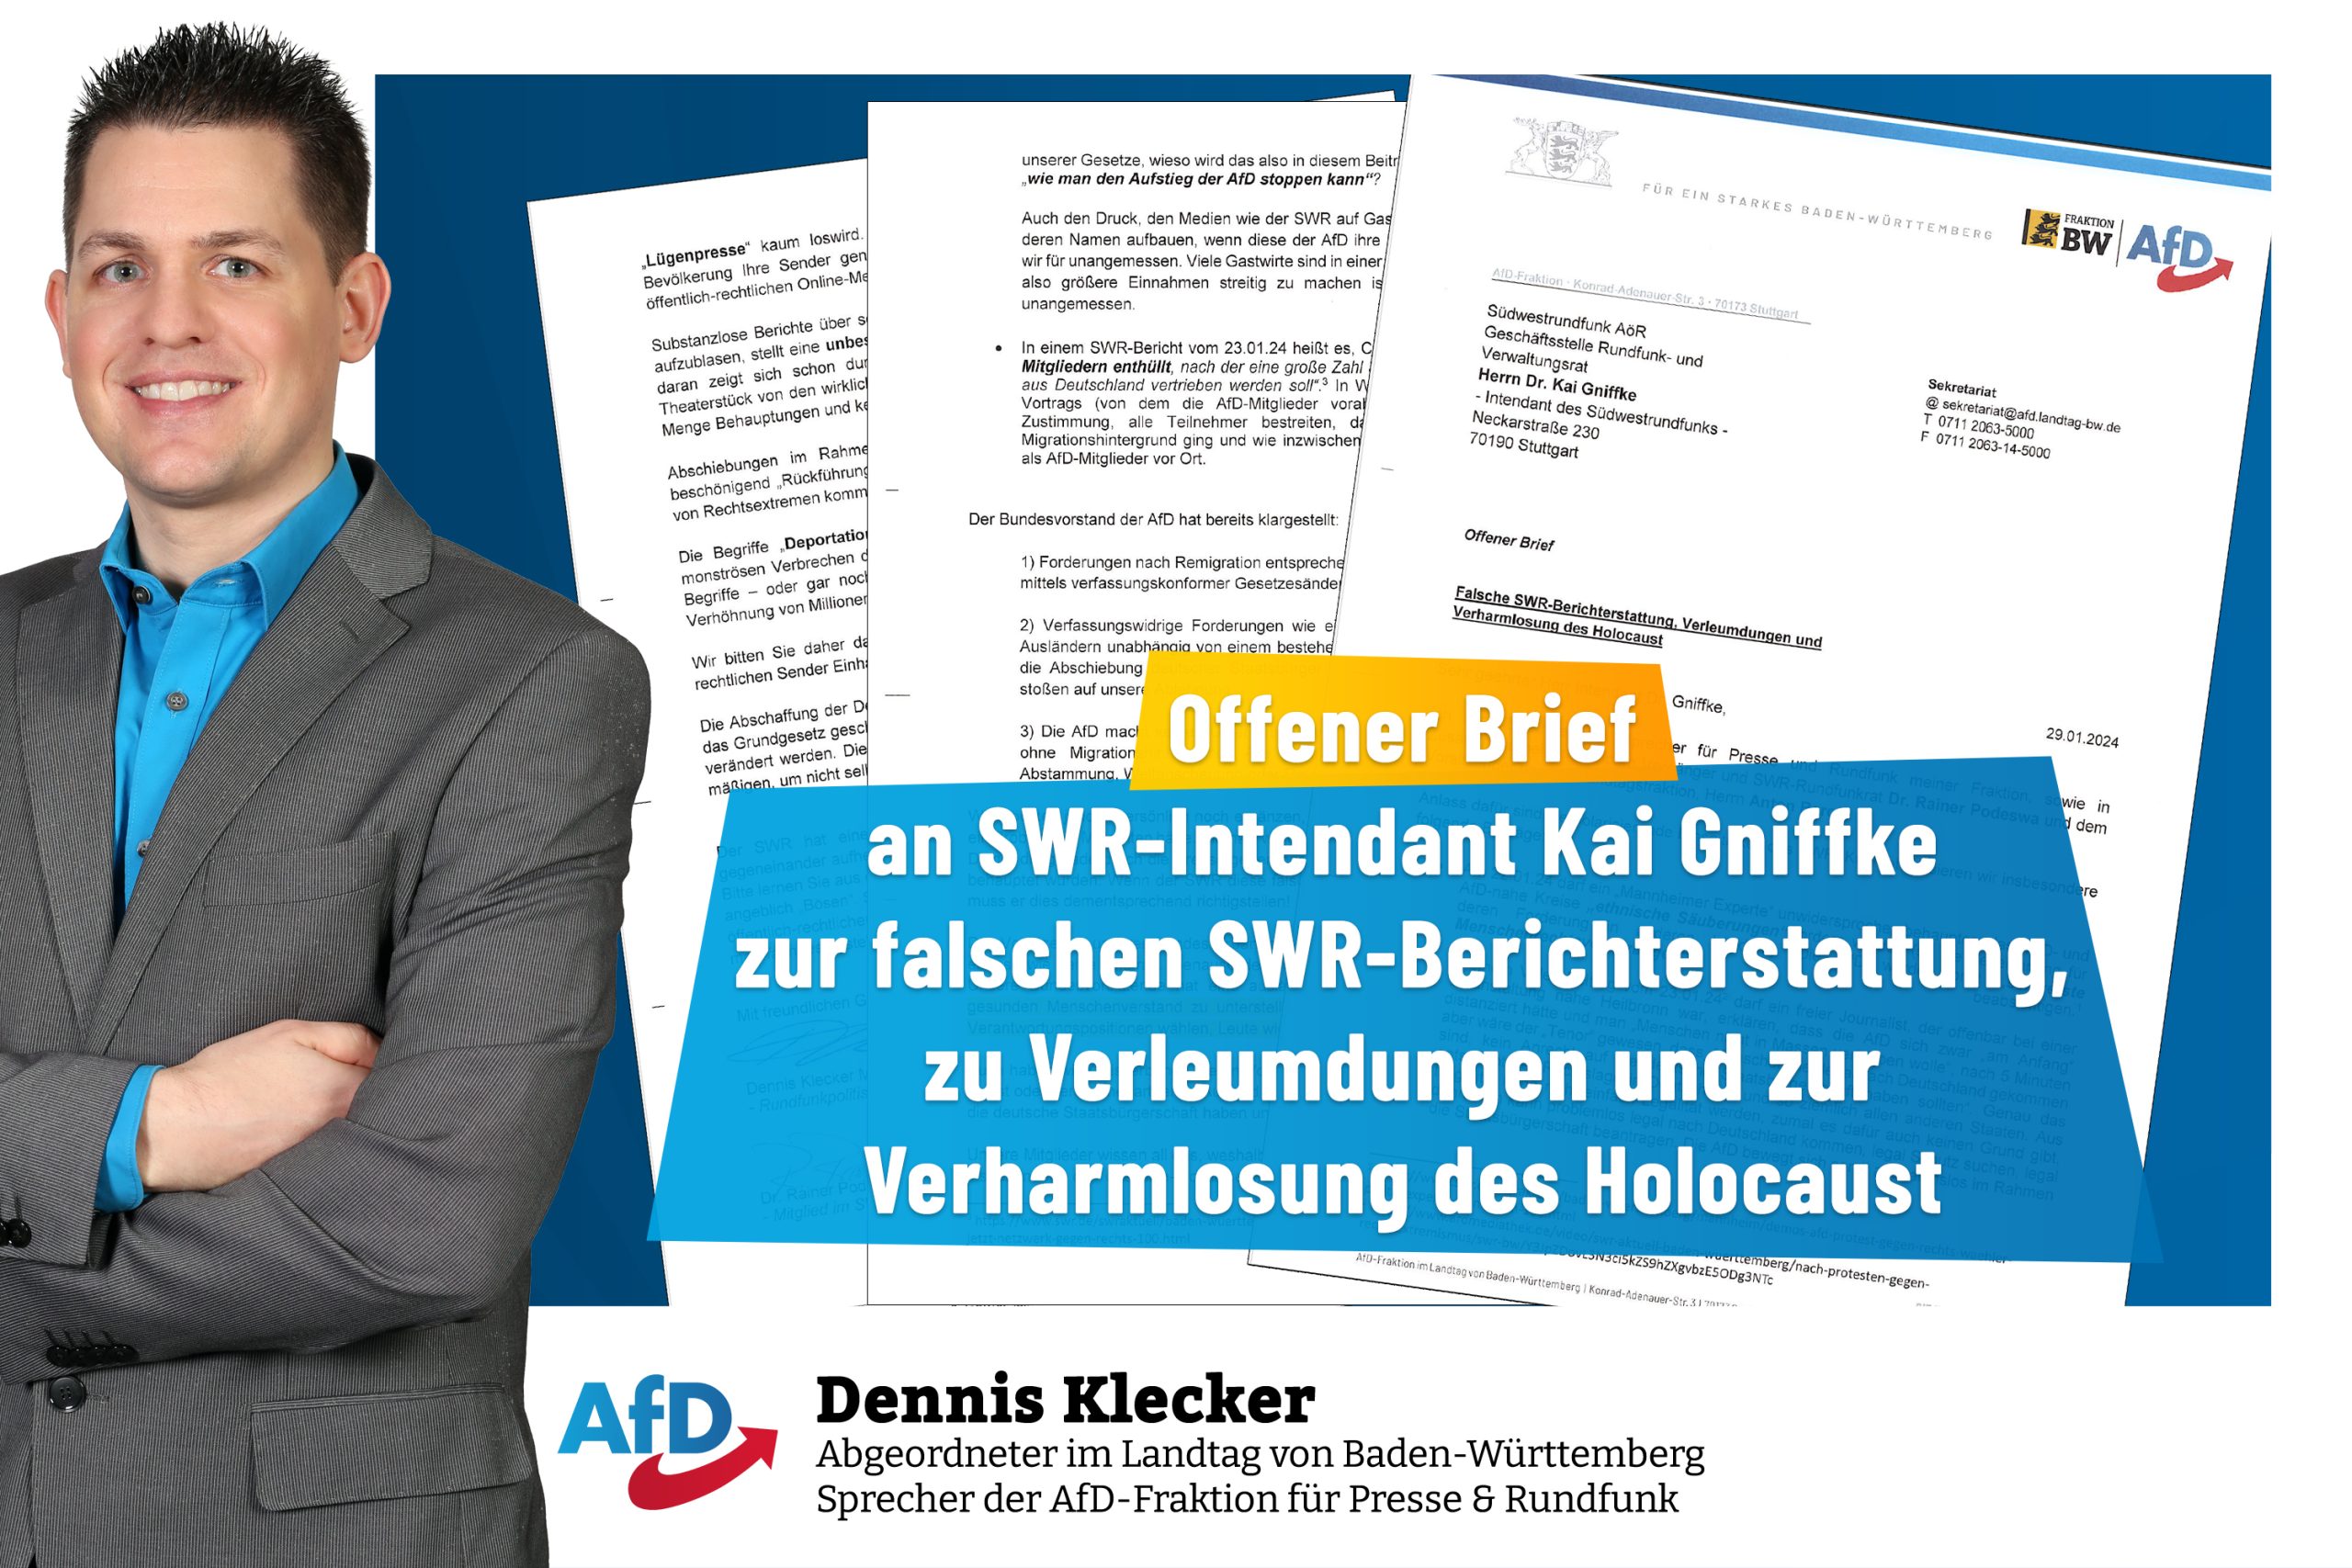 Offener Brief an SWR-Intendant Kai Gniffke zur falschen SWR-Berichterstattung, zu Verleumdungen und zur Verharmlosung des Holocaust